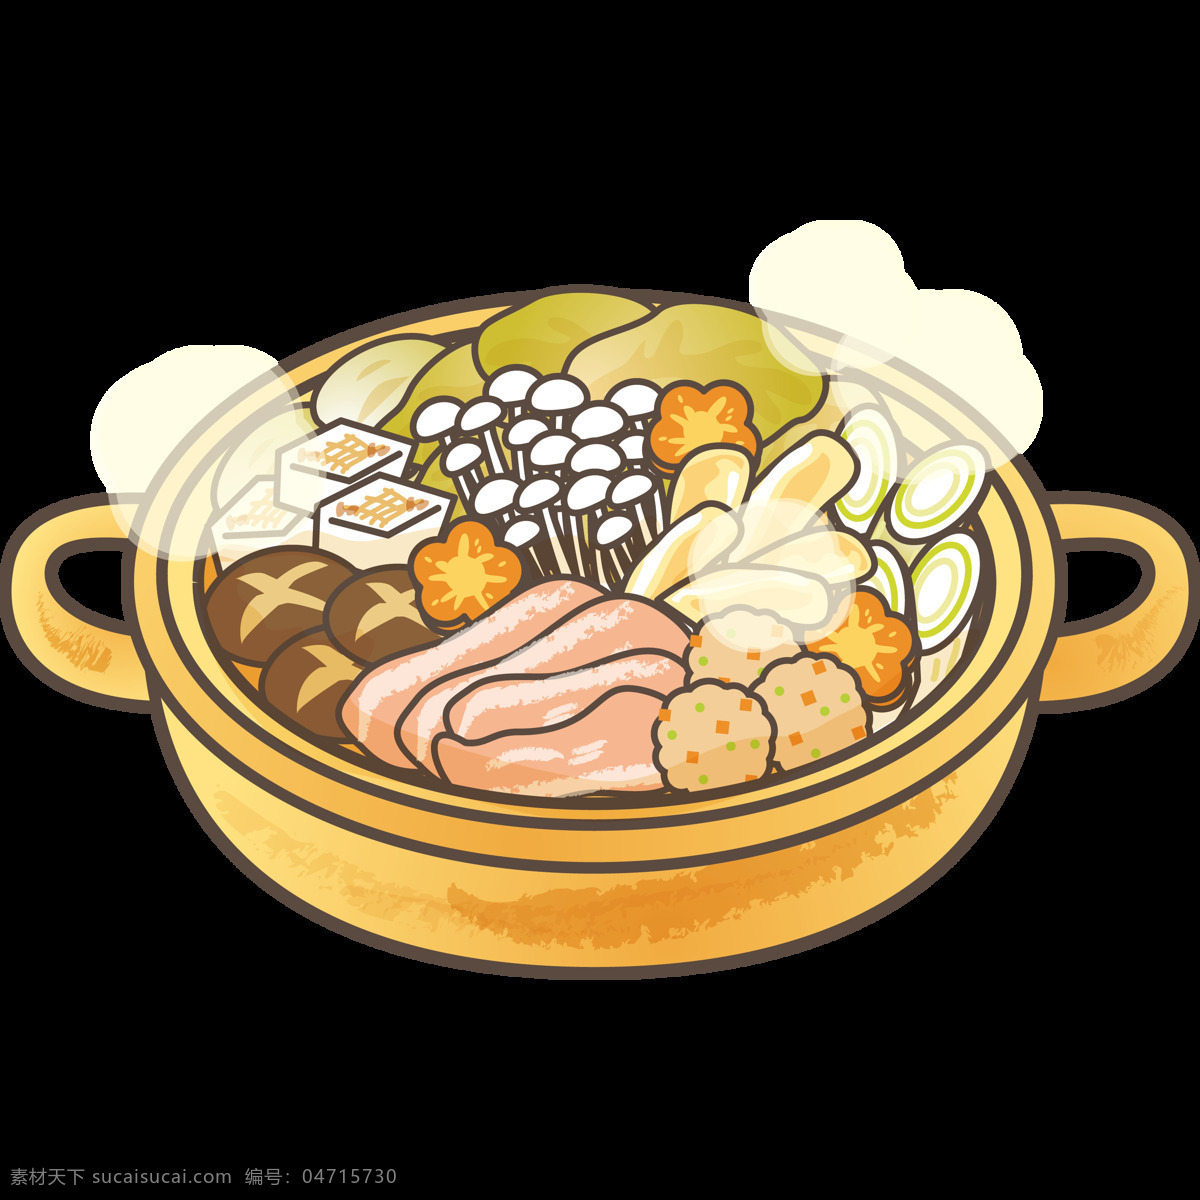 手绘 食物 砂锅 元素 设计素材 餐饮元素 砂锅粉丝 海鲜砂锅 食品 广告设计模版 砂锅炖菜 免抠素材 食物元素